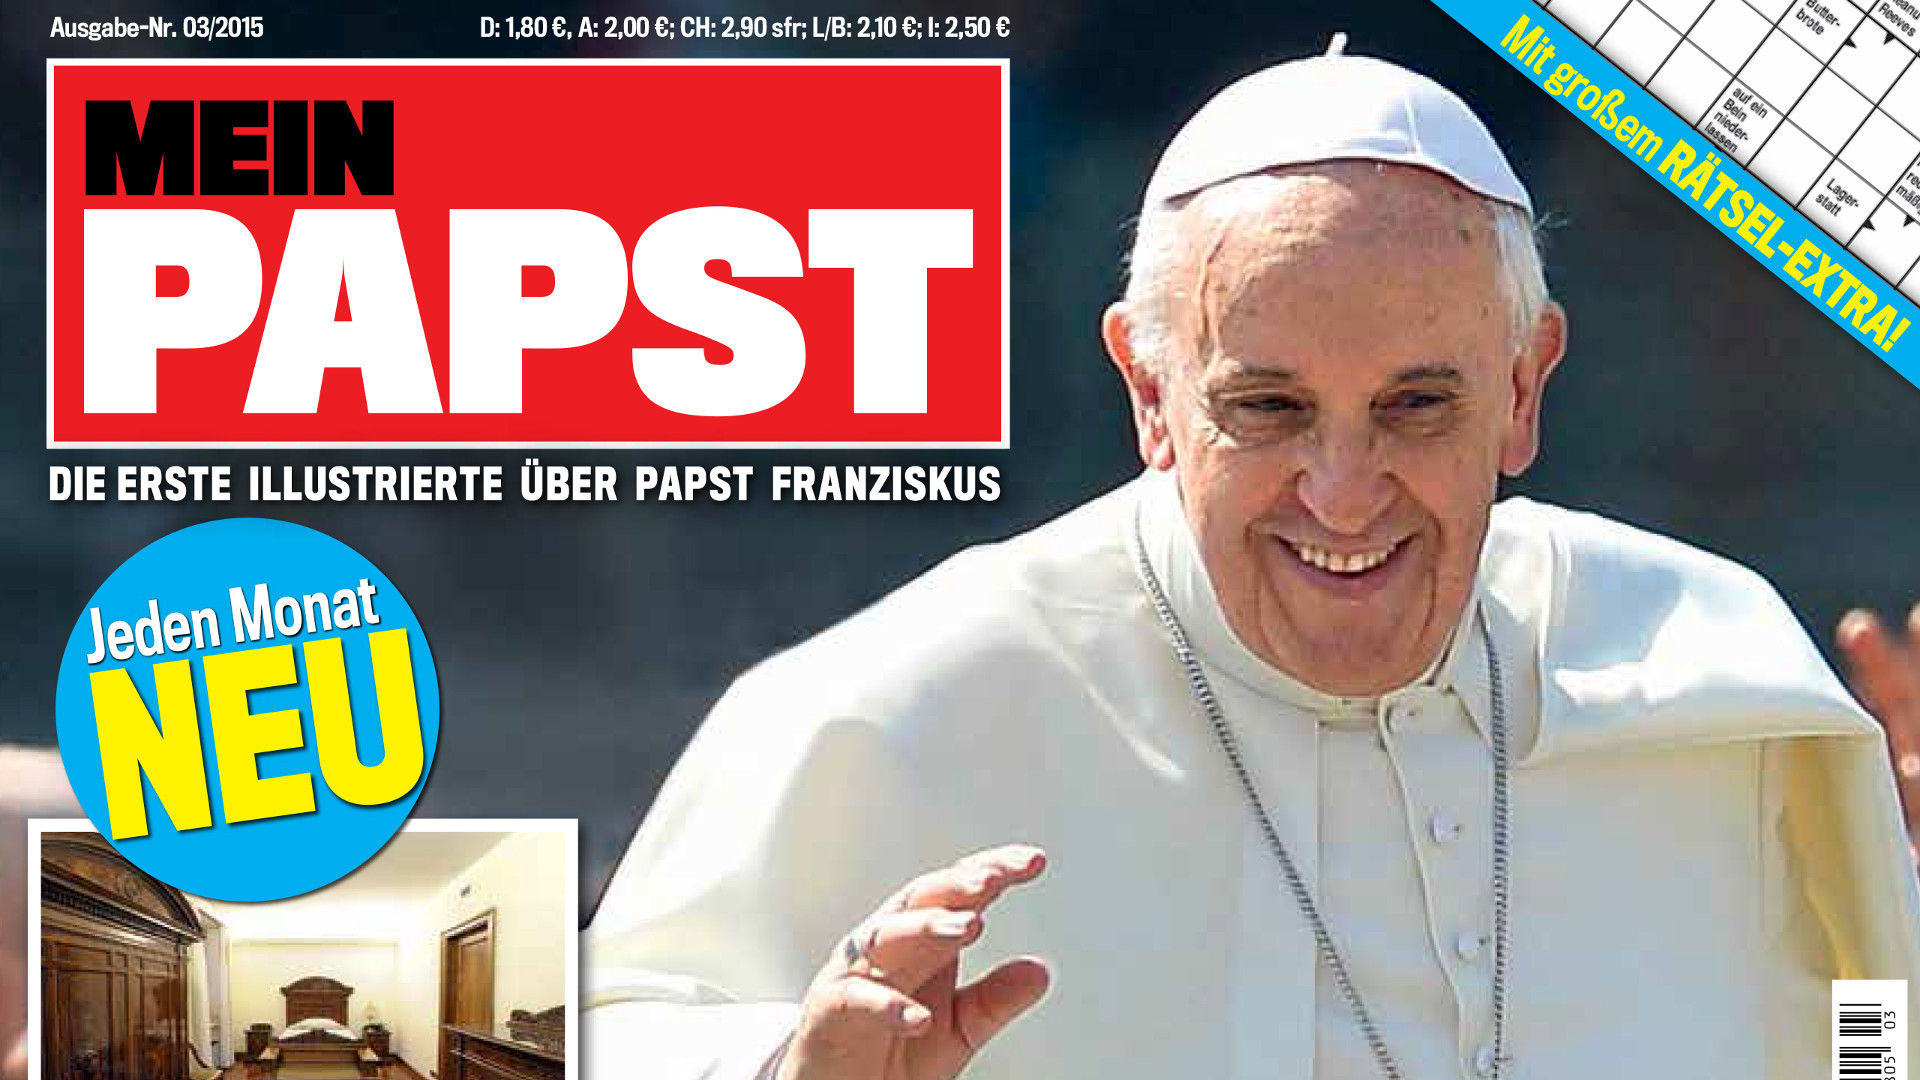 Am 18. März 2015 erscheint die erste Ausgabe der Illustrierten «Mein Papst»